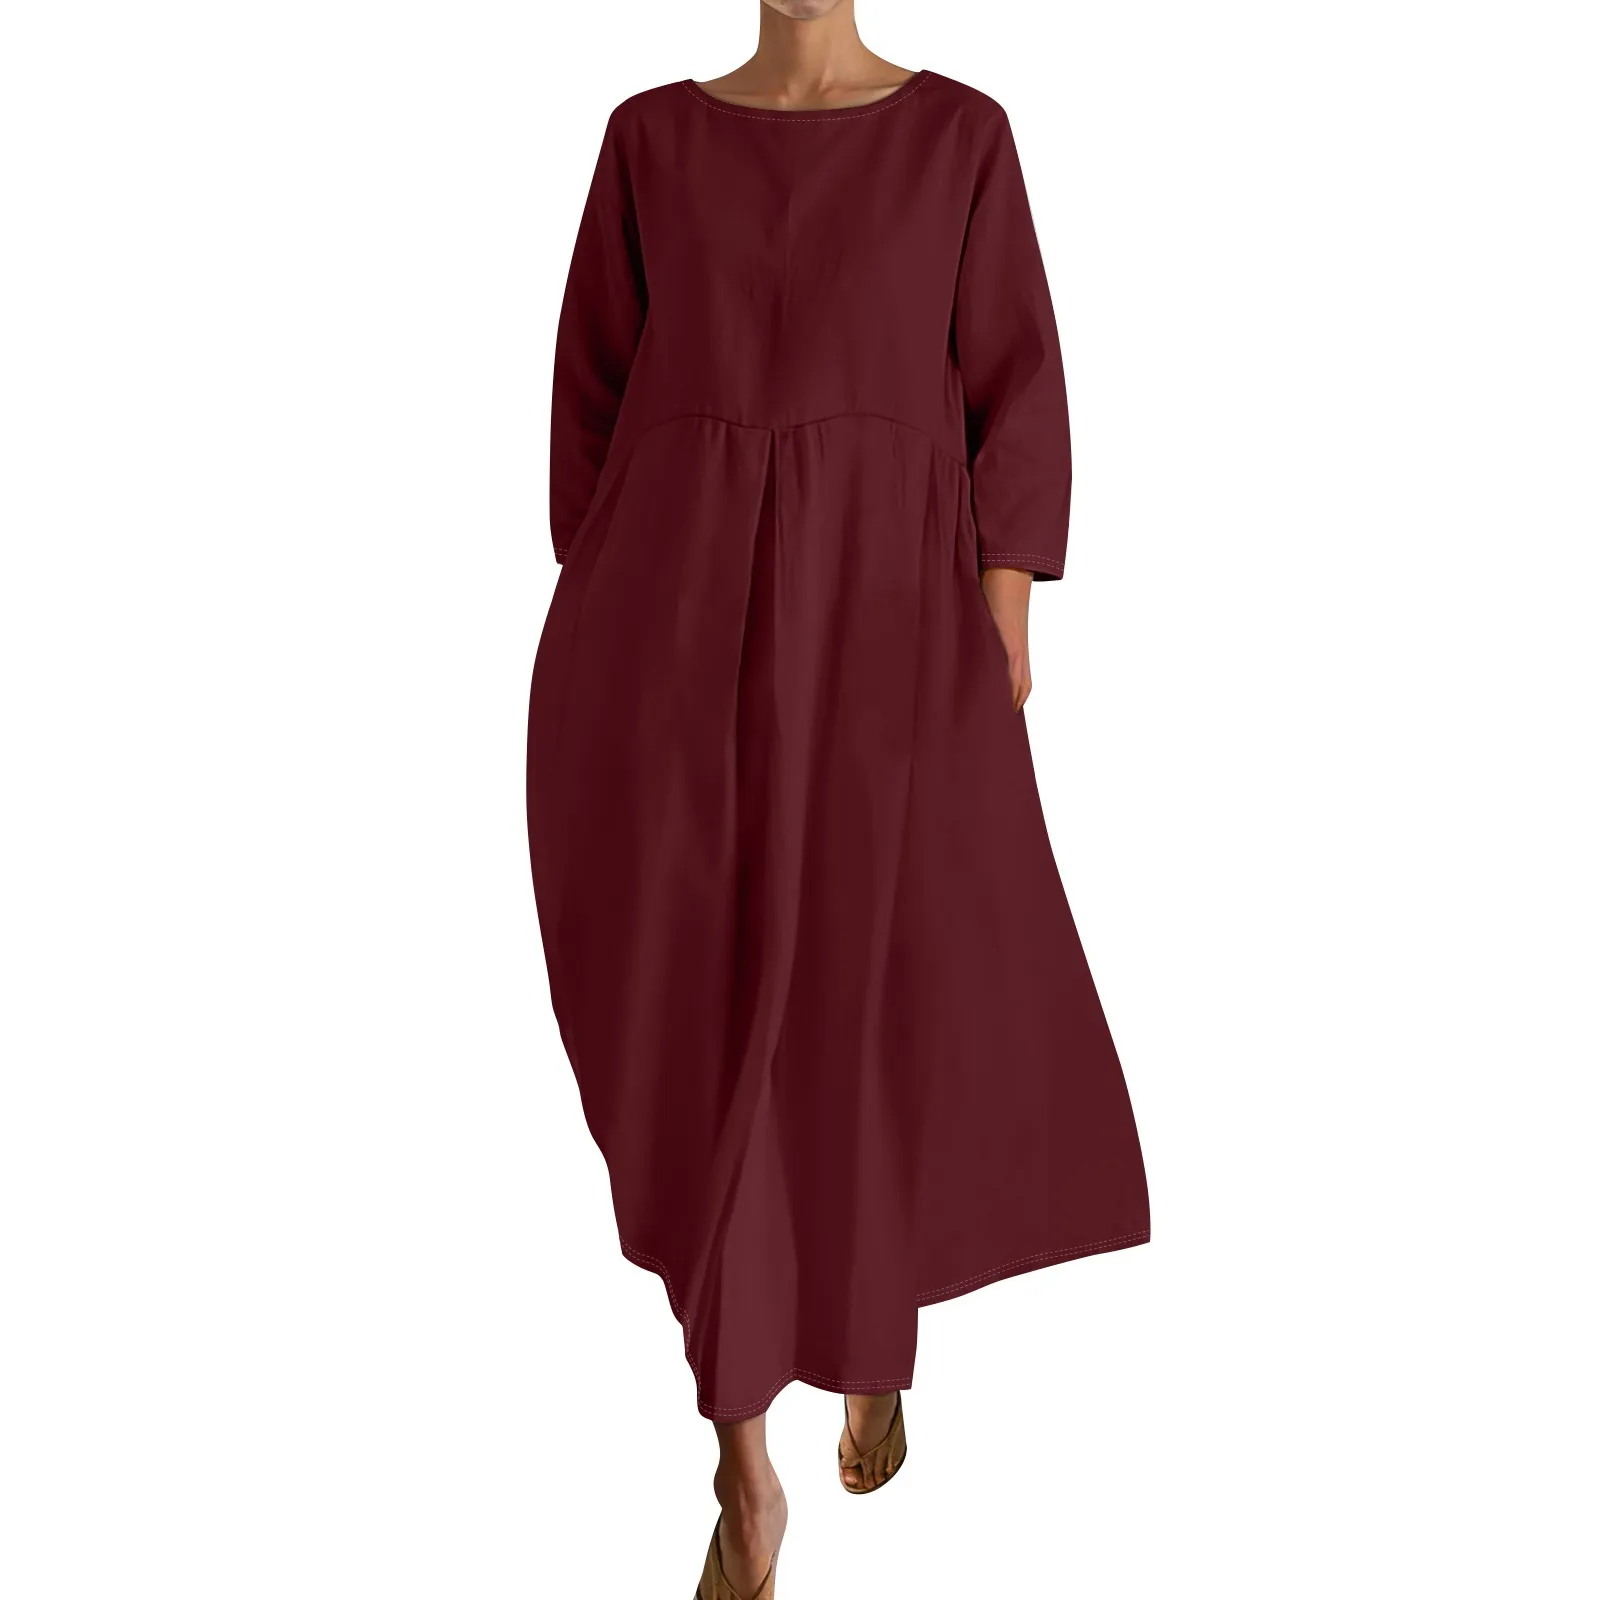 

Платье женское длинное Плиссированное с рукавом 3/4, элегантный повседневный однотонный модный пляжный сарафан свободного покроя, на лето